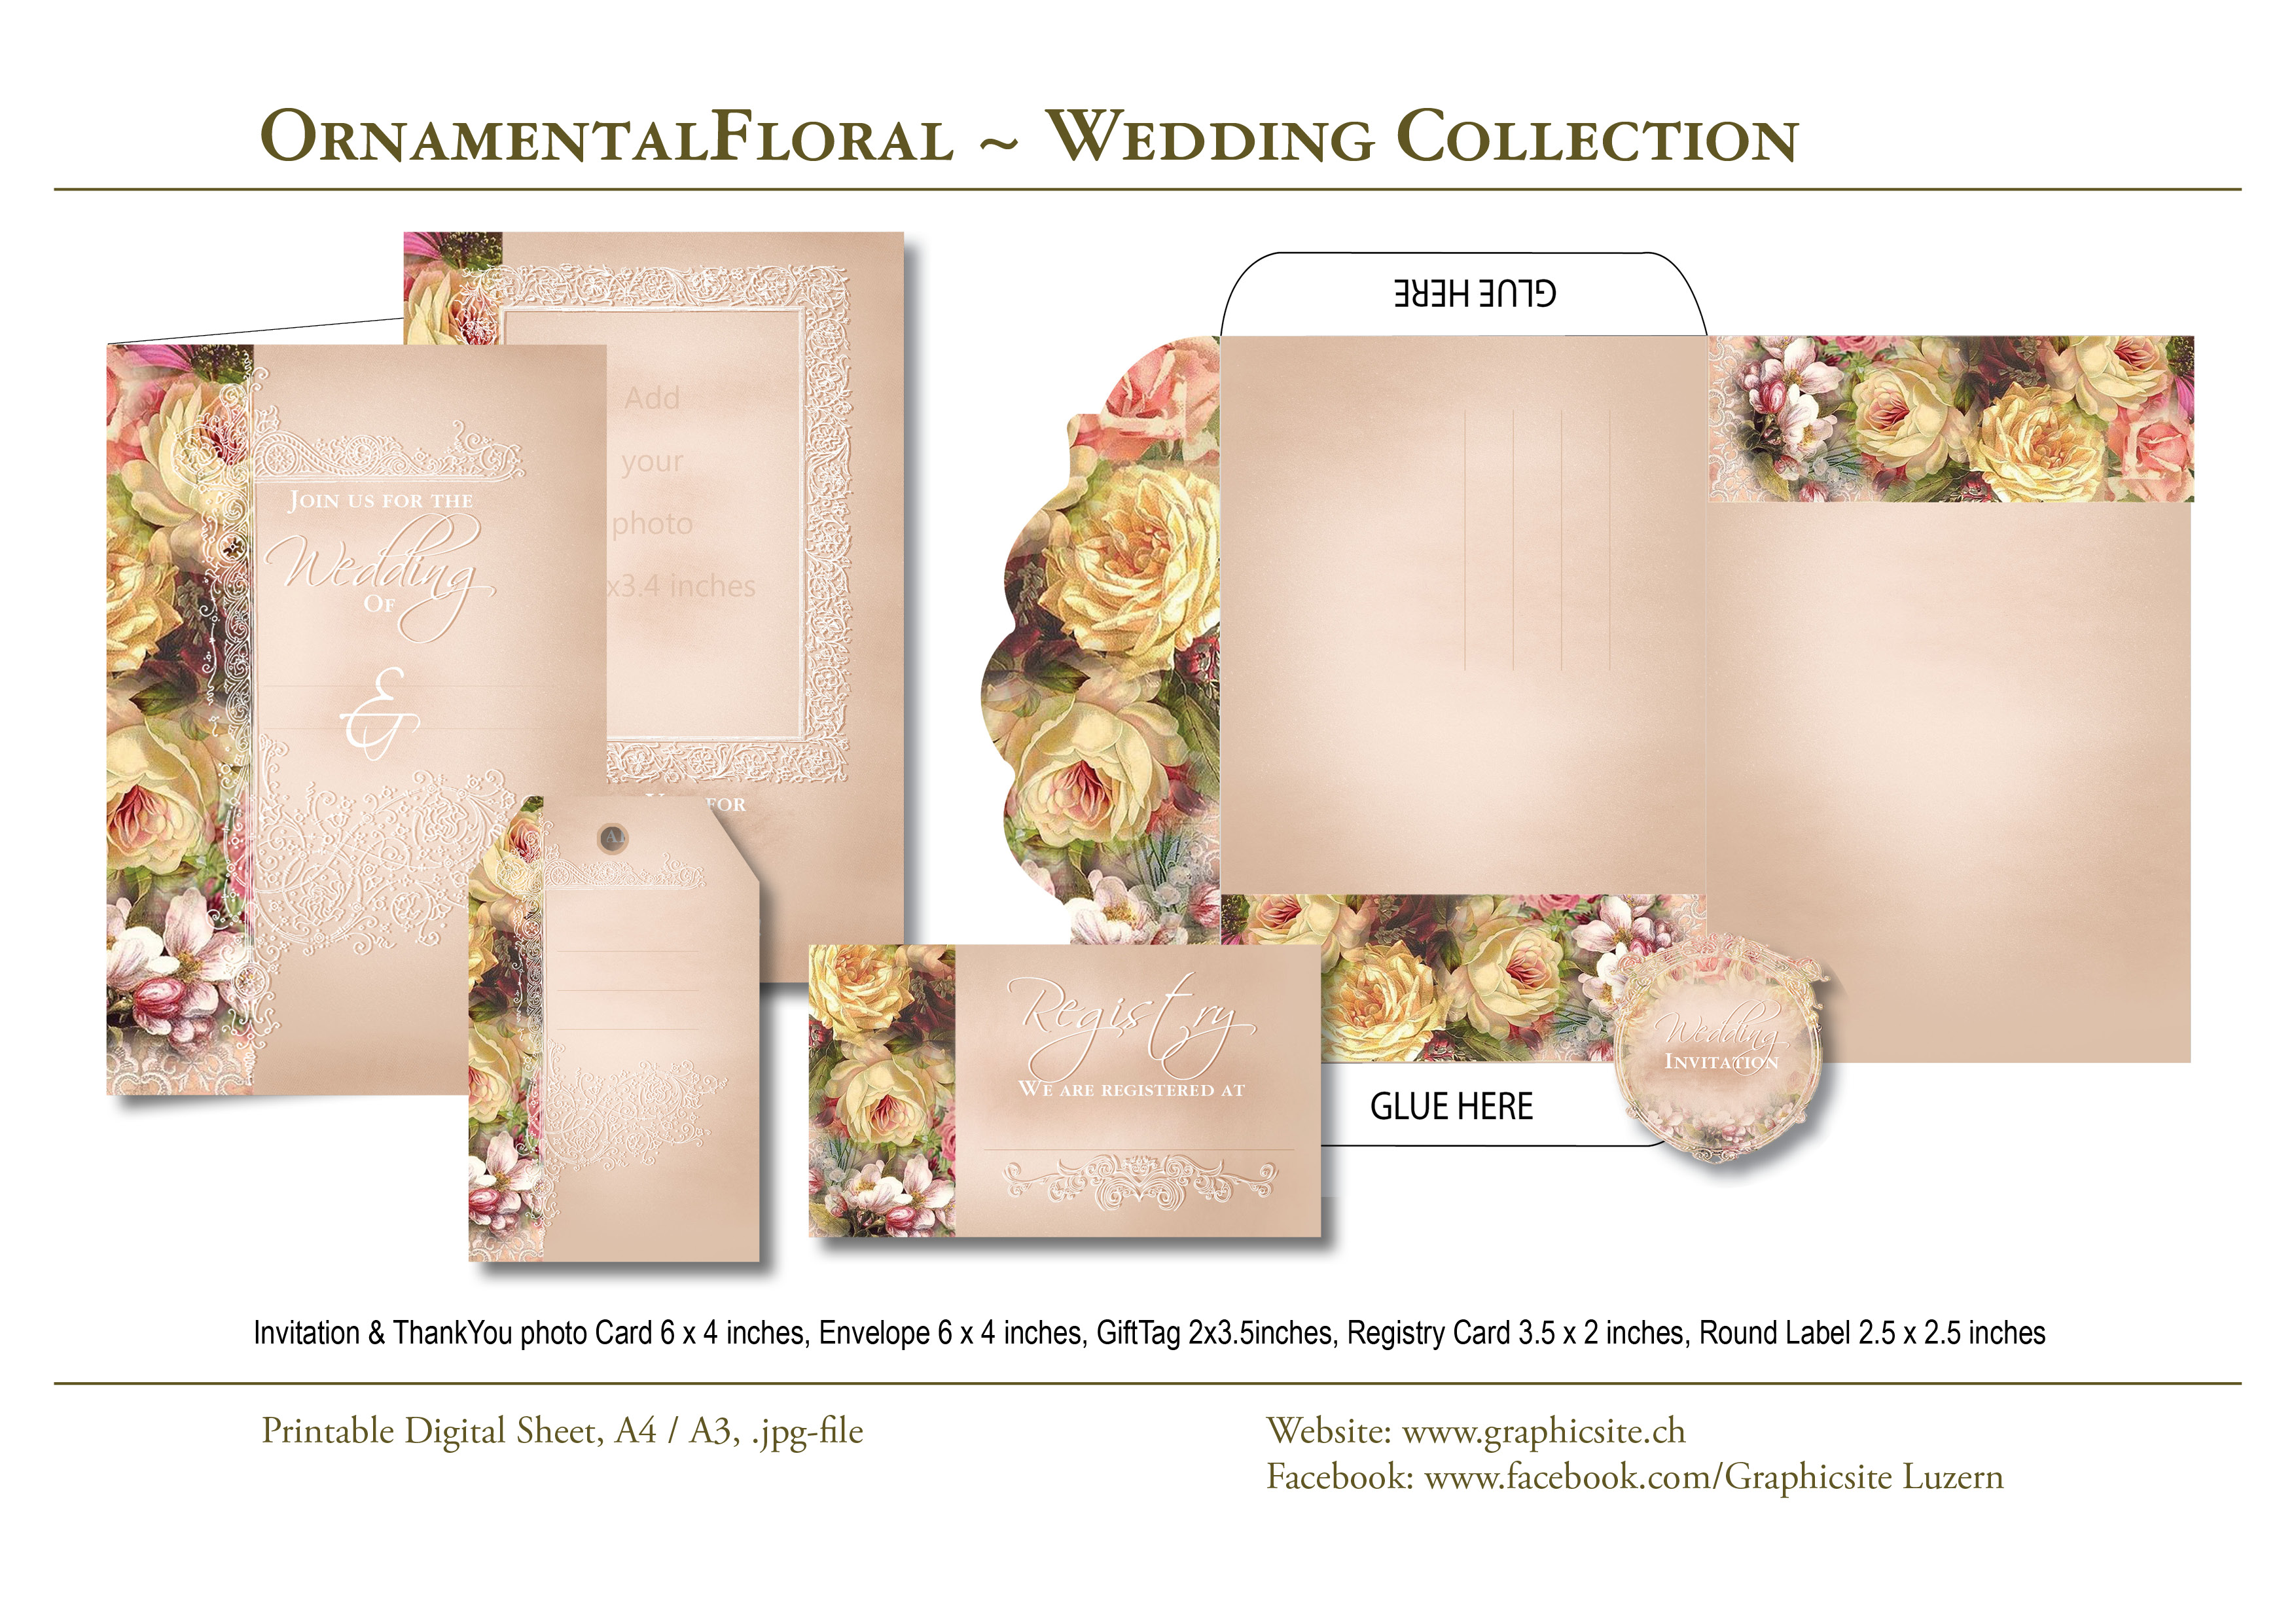 Karten selber drucken - Hochzeit - OrnamentalFloral Wedding Collection - #hochzeitskarten, #einladungen, #selber, #gestalten, #basteln, #papeterie, 